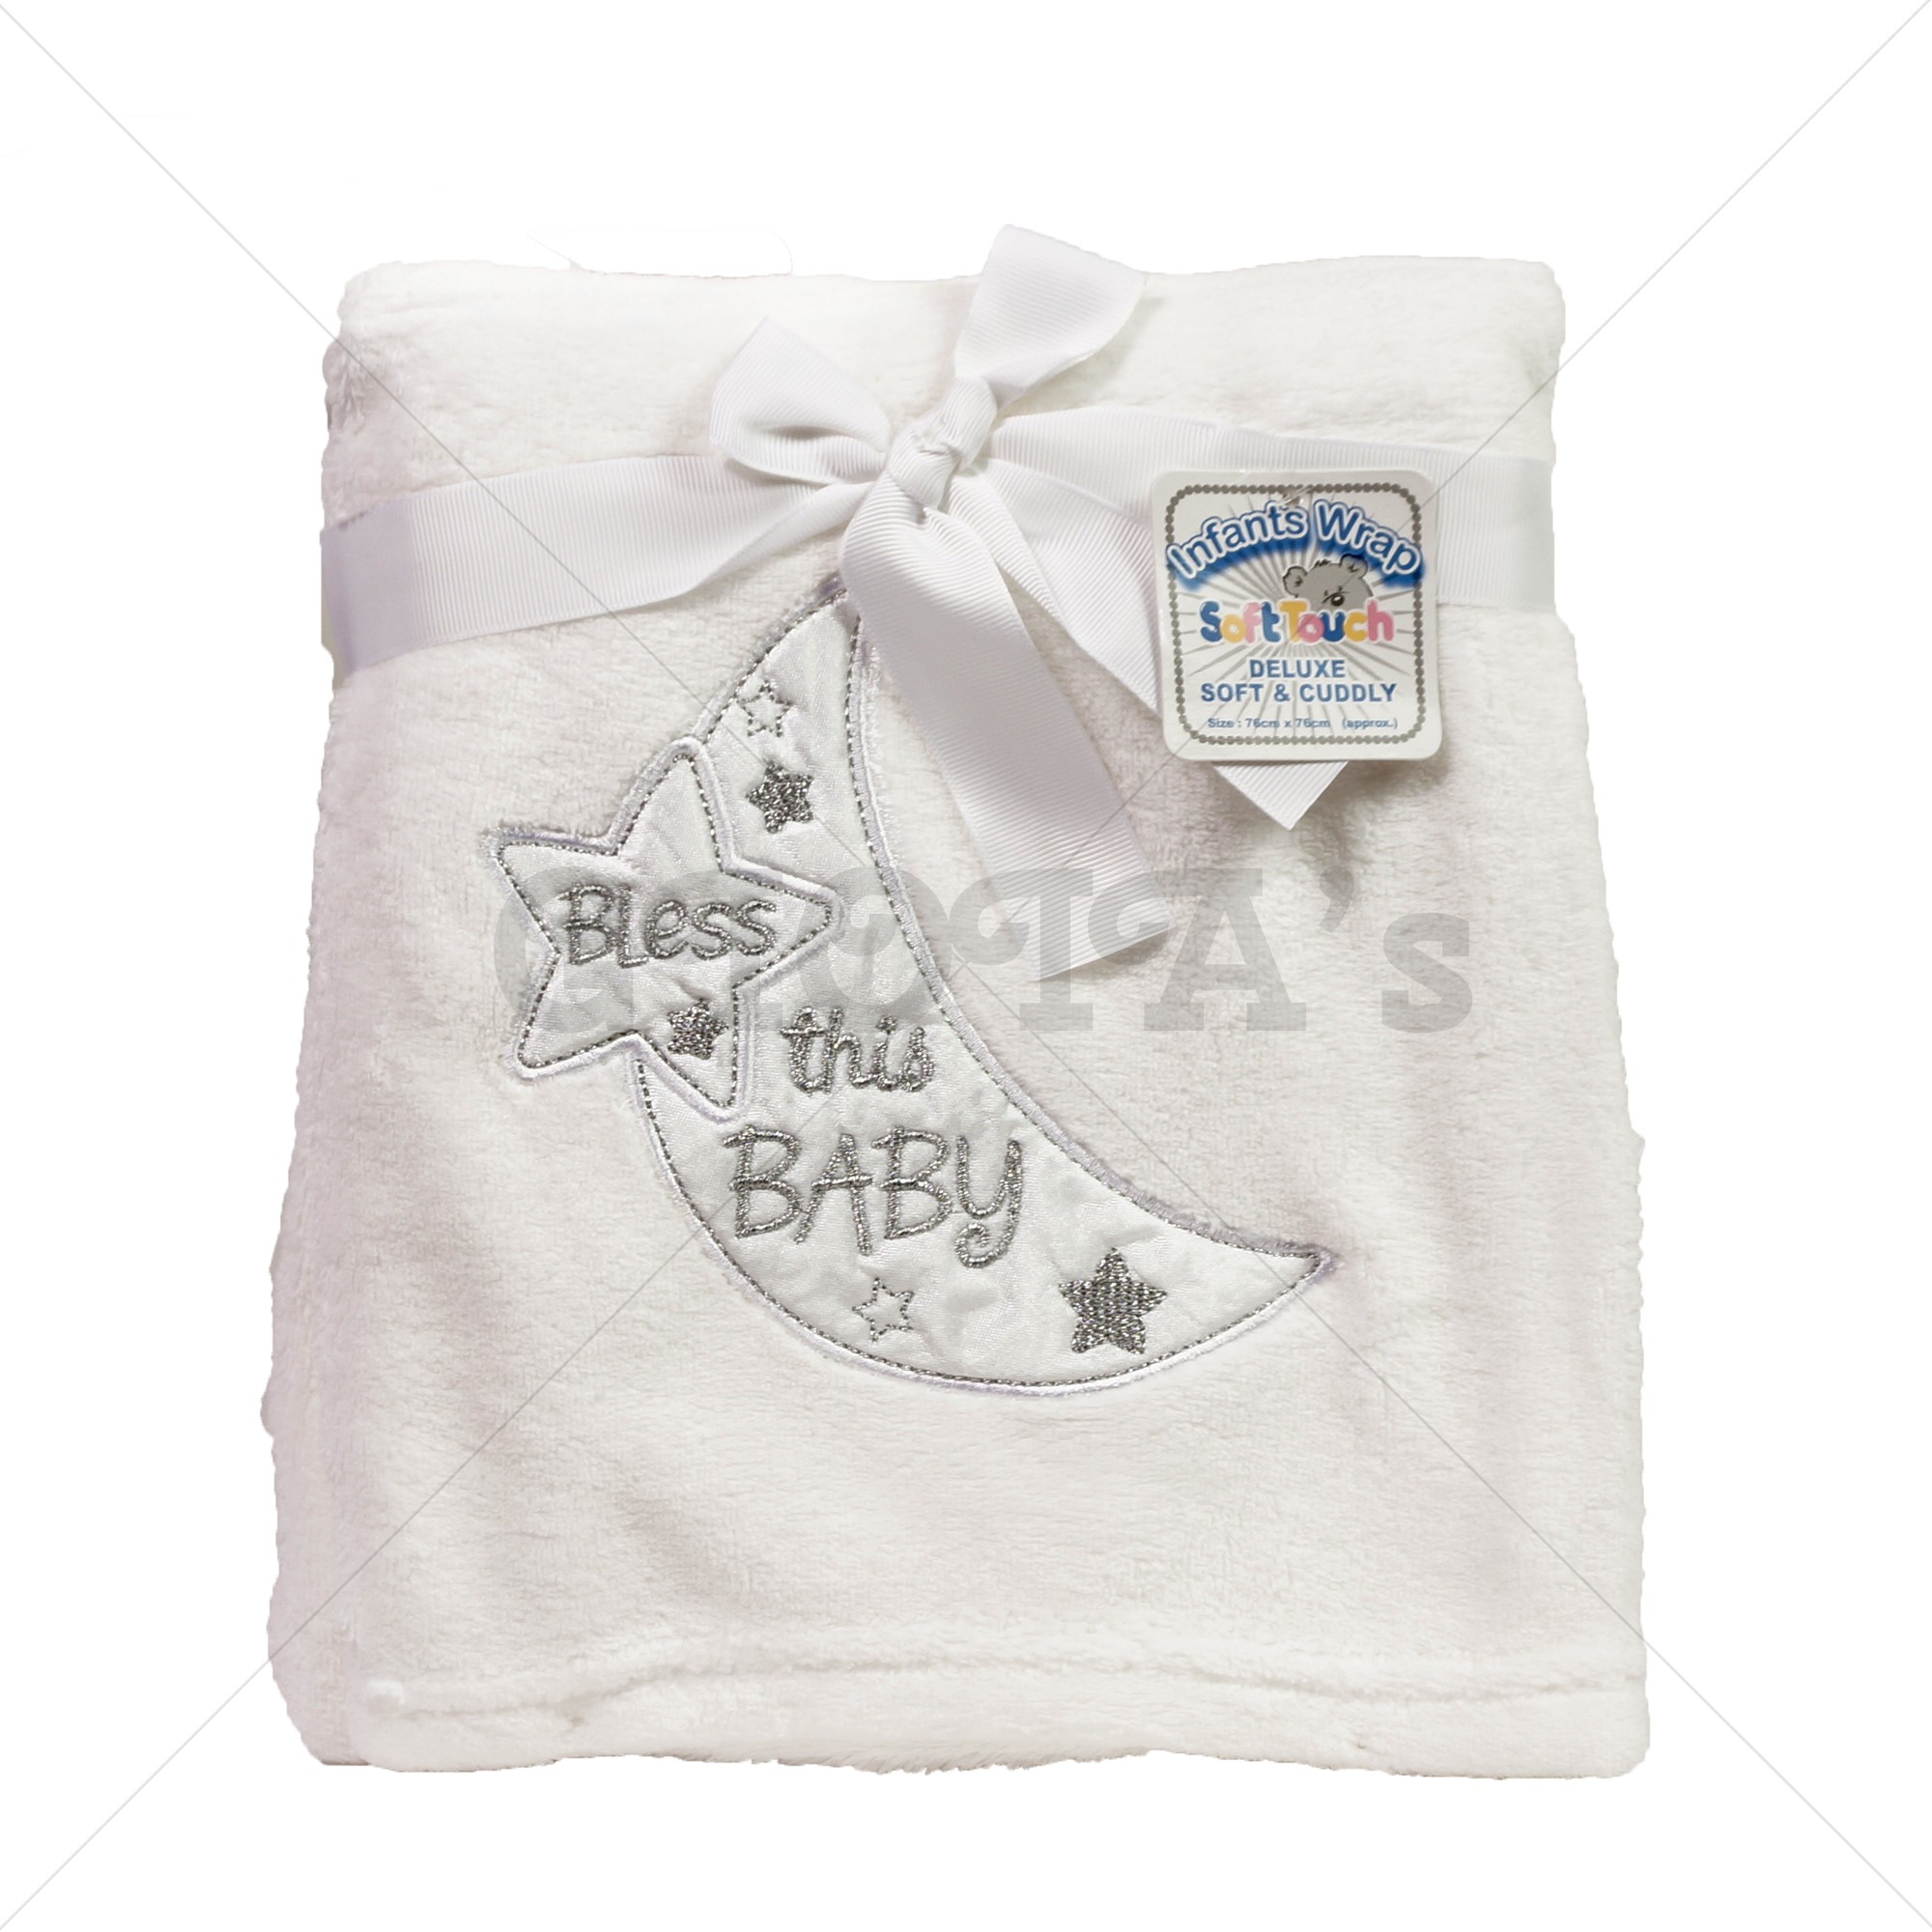 Recreatie Wauw Sterkte Soft Touch fleece deken met de tekst Bless this Baby - GIOIA's cadeau en  feestartikelen